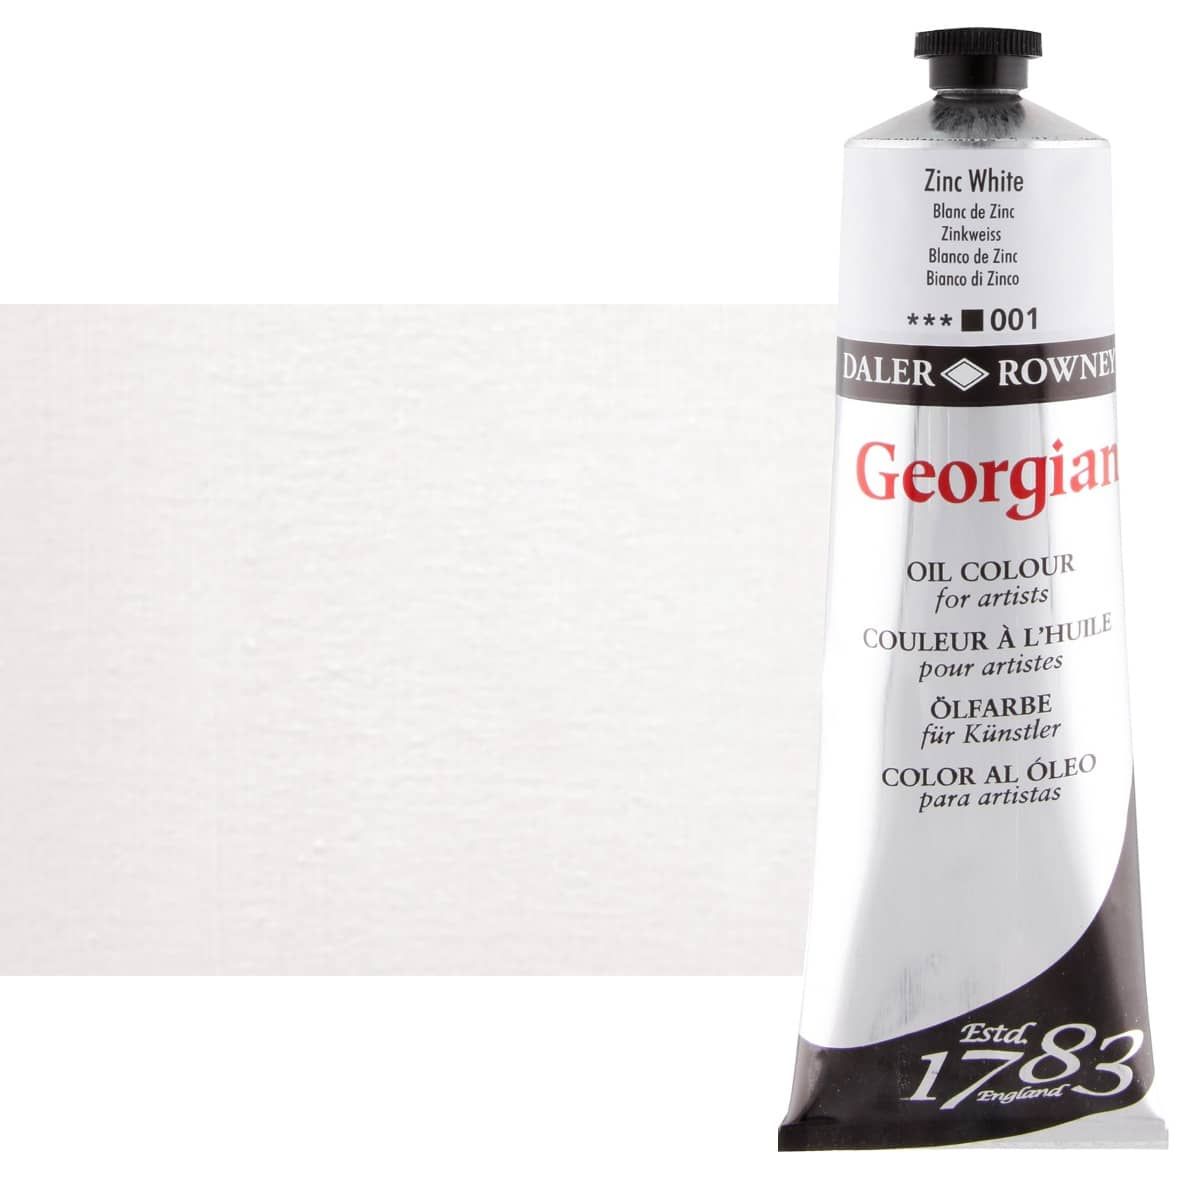 Daler-Rowney Georgian Oil Color 225ml Tube - Zinc White